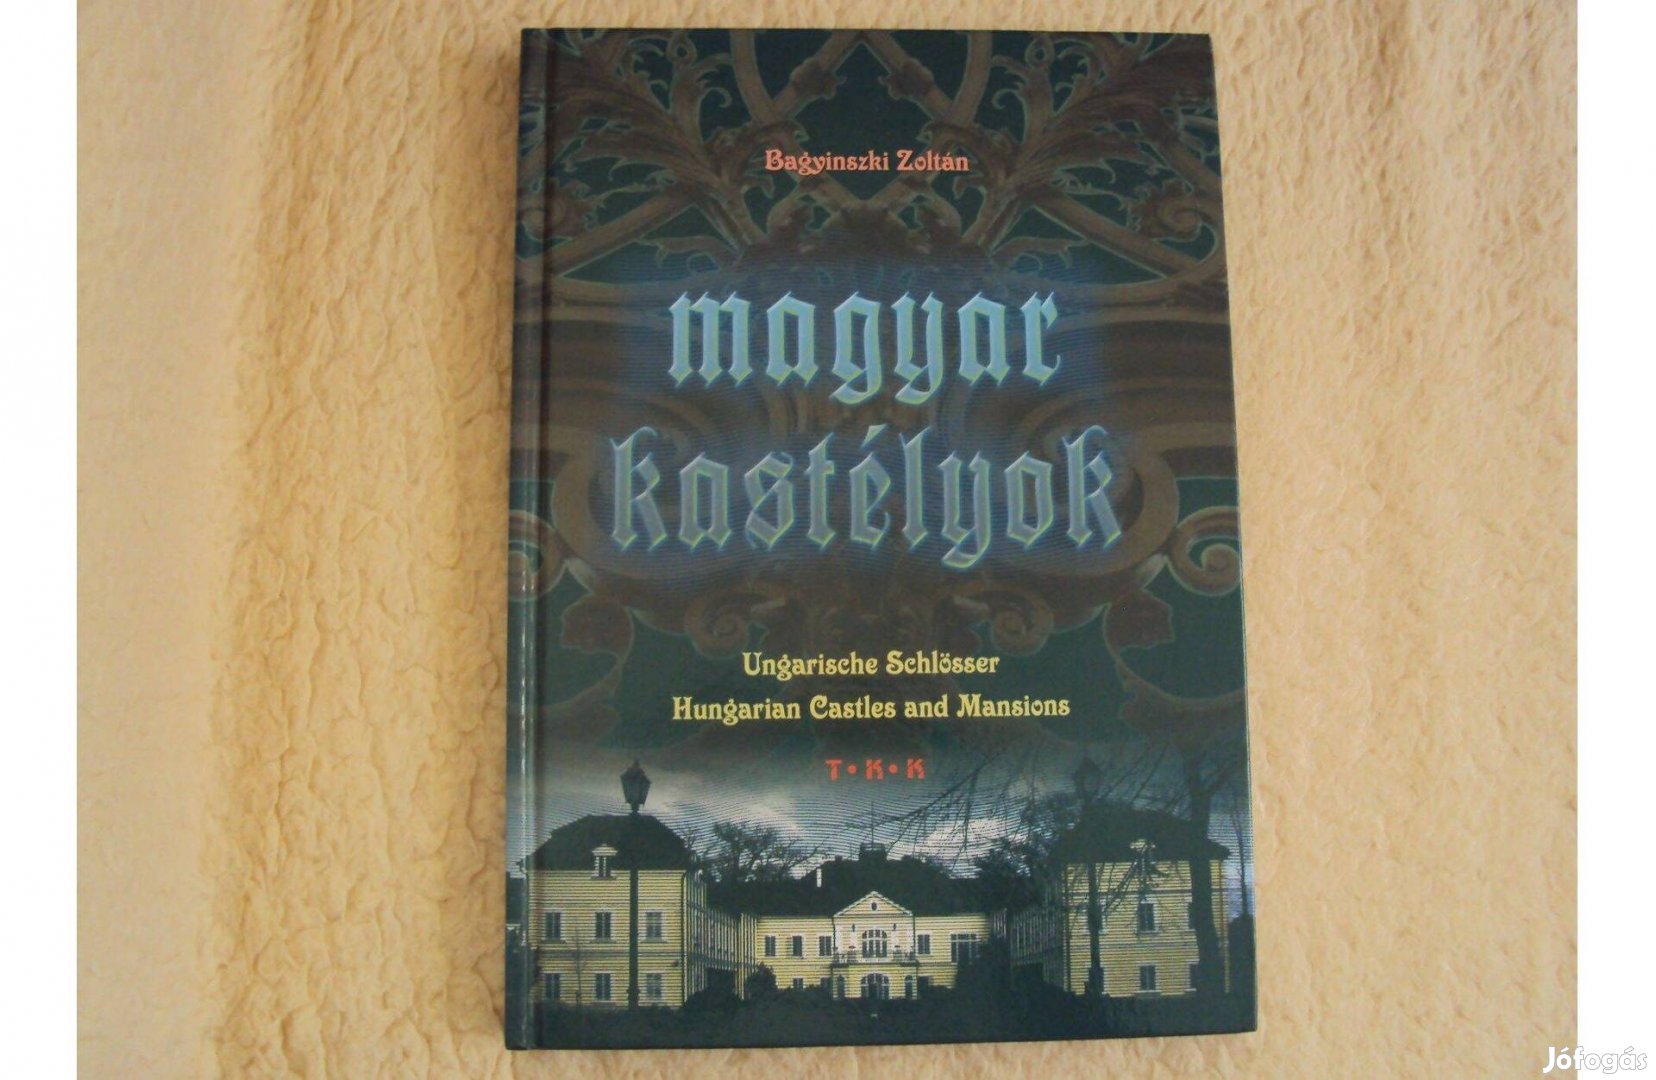 Magyar kastélyok